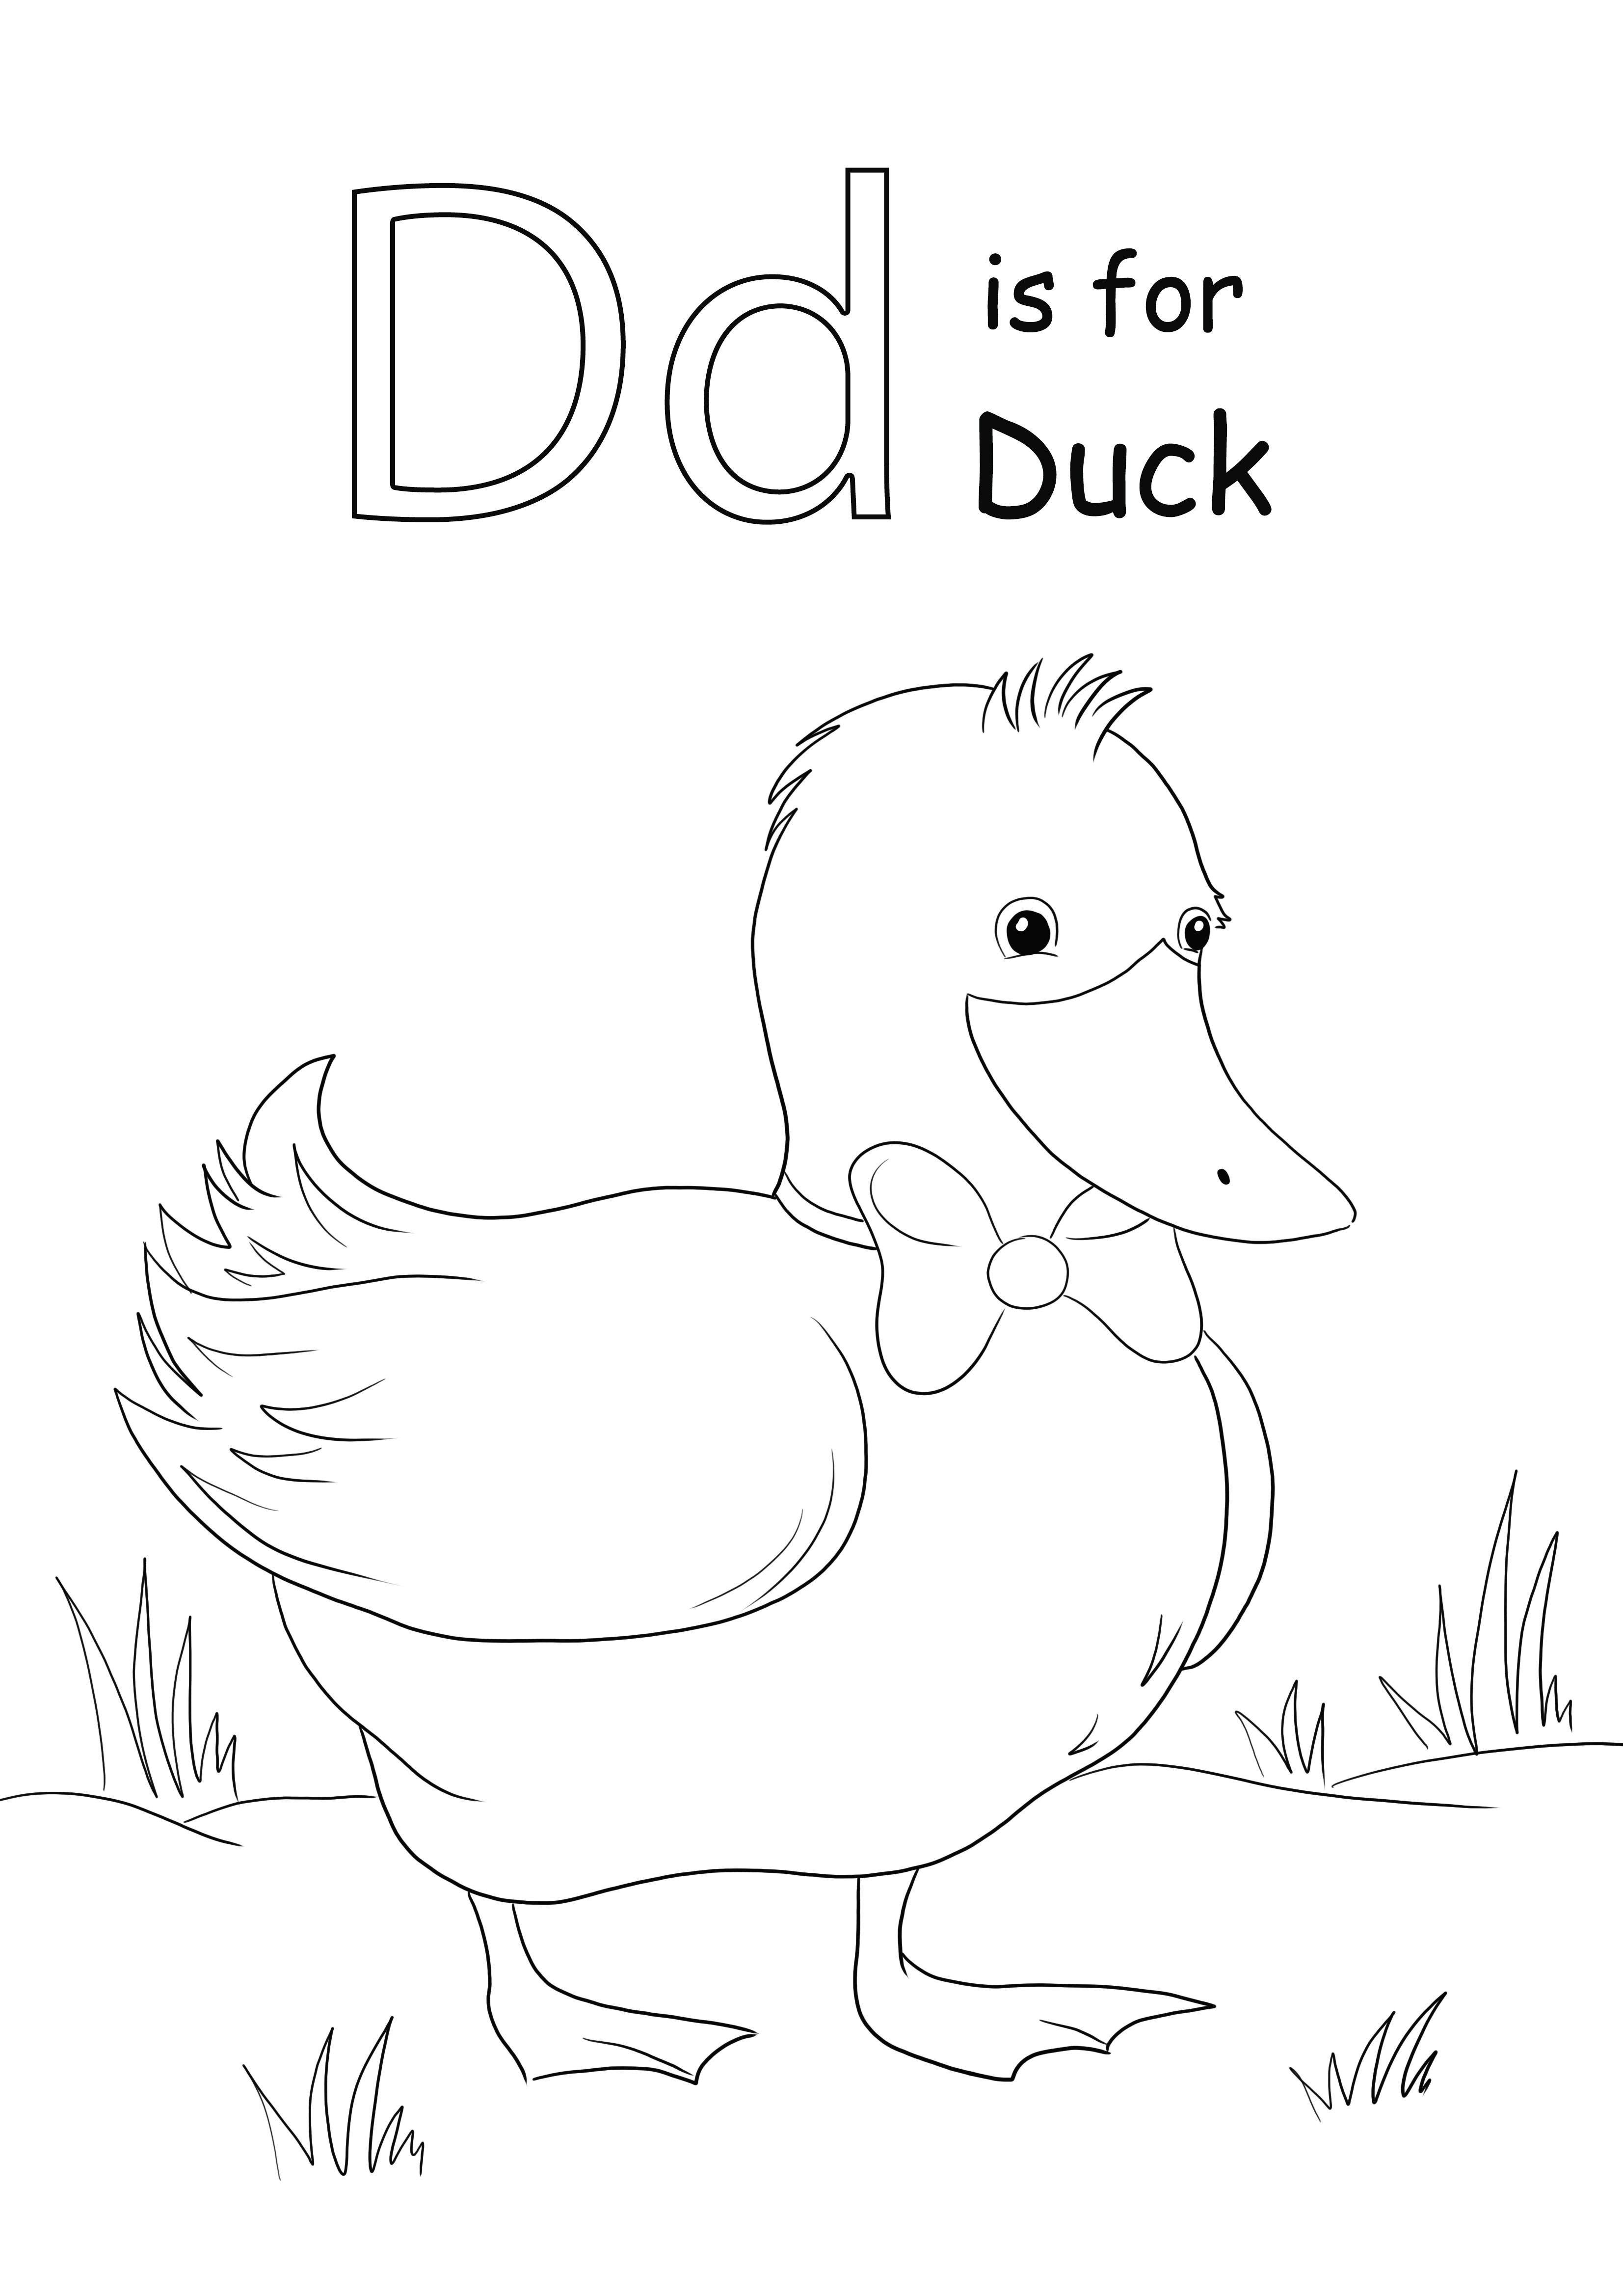 Pencetakan gratis Huruf D untuk mewarnai gambar Bebek agar anak-anak mudah belajar